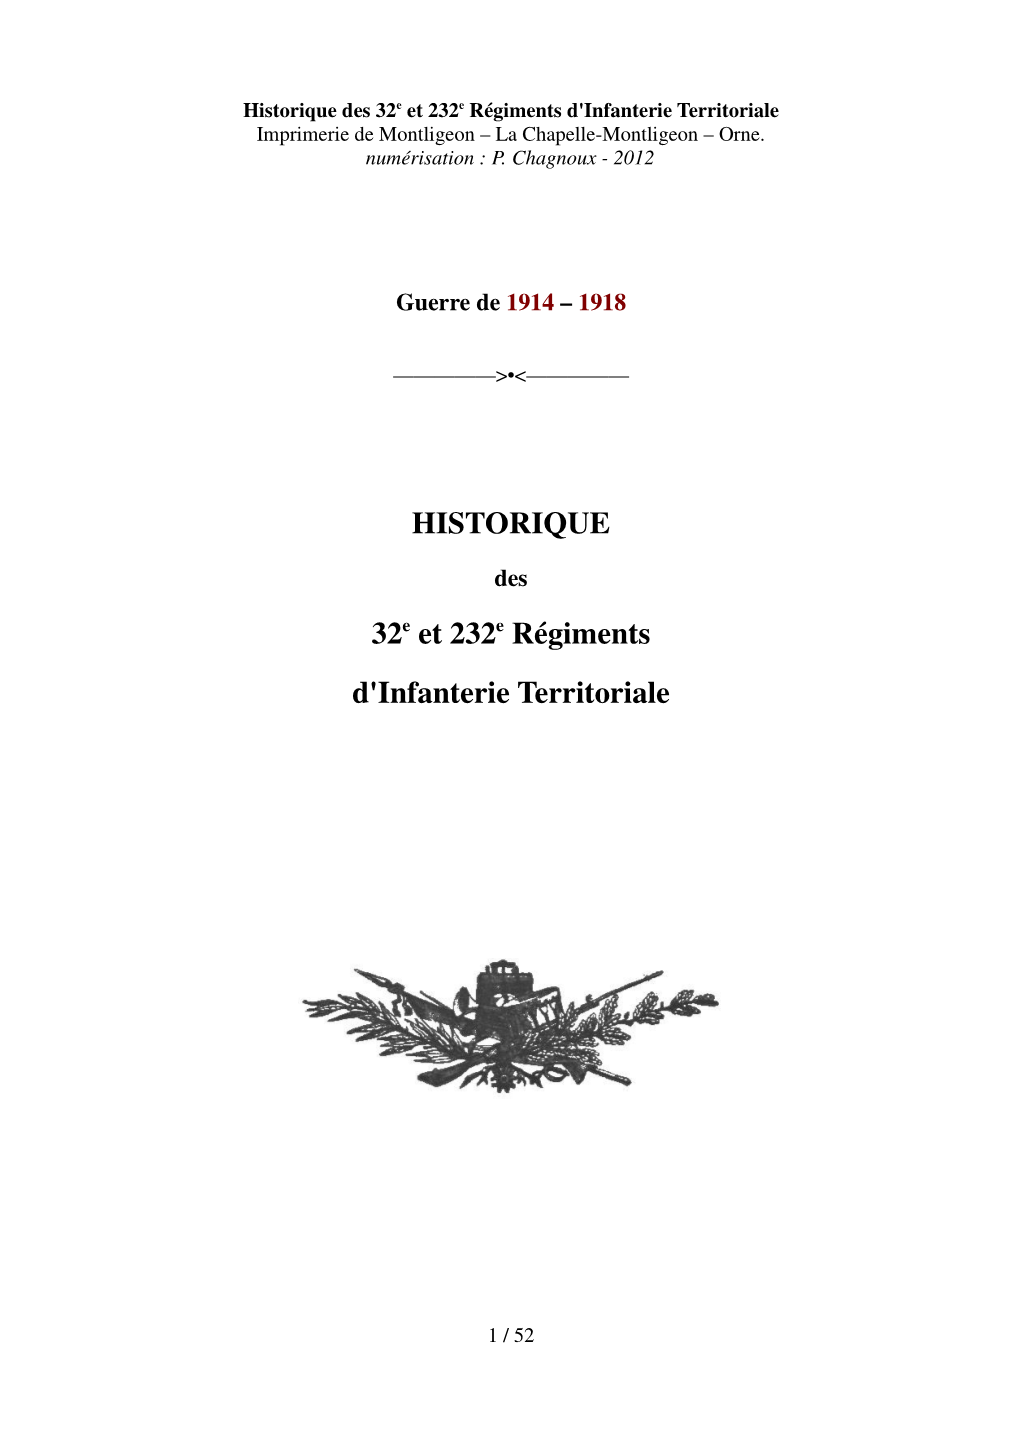 HISTORIQUE 32E Et 232E Régiments D'infanterie Territoriale